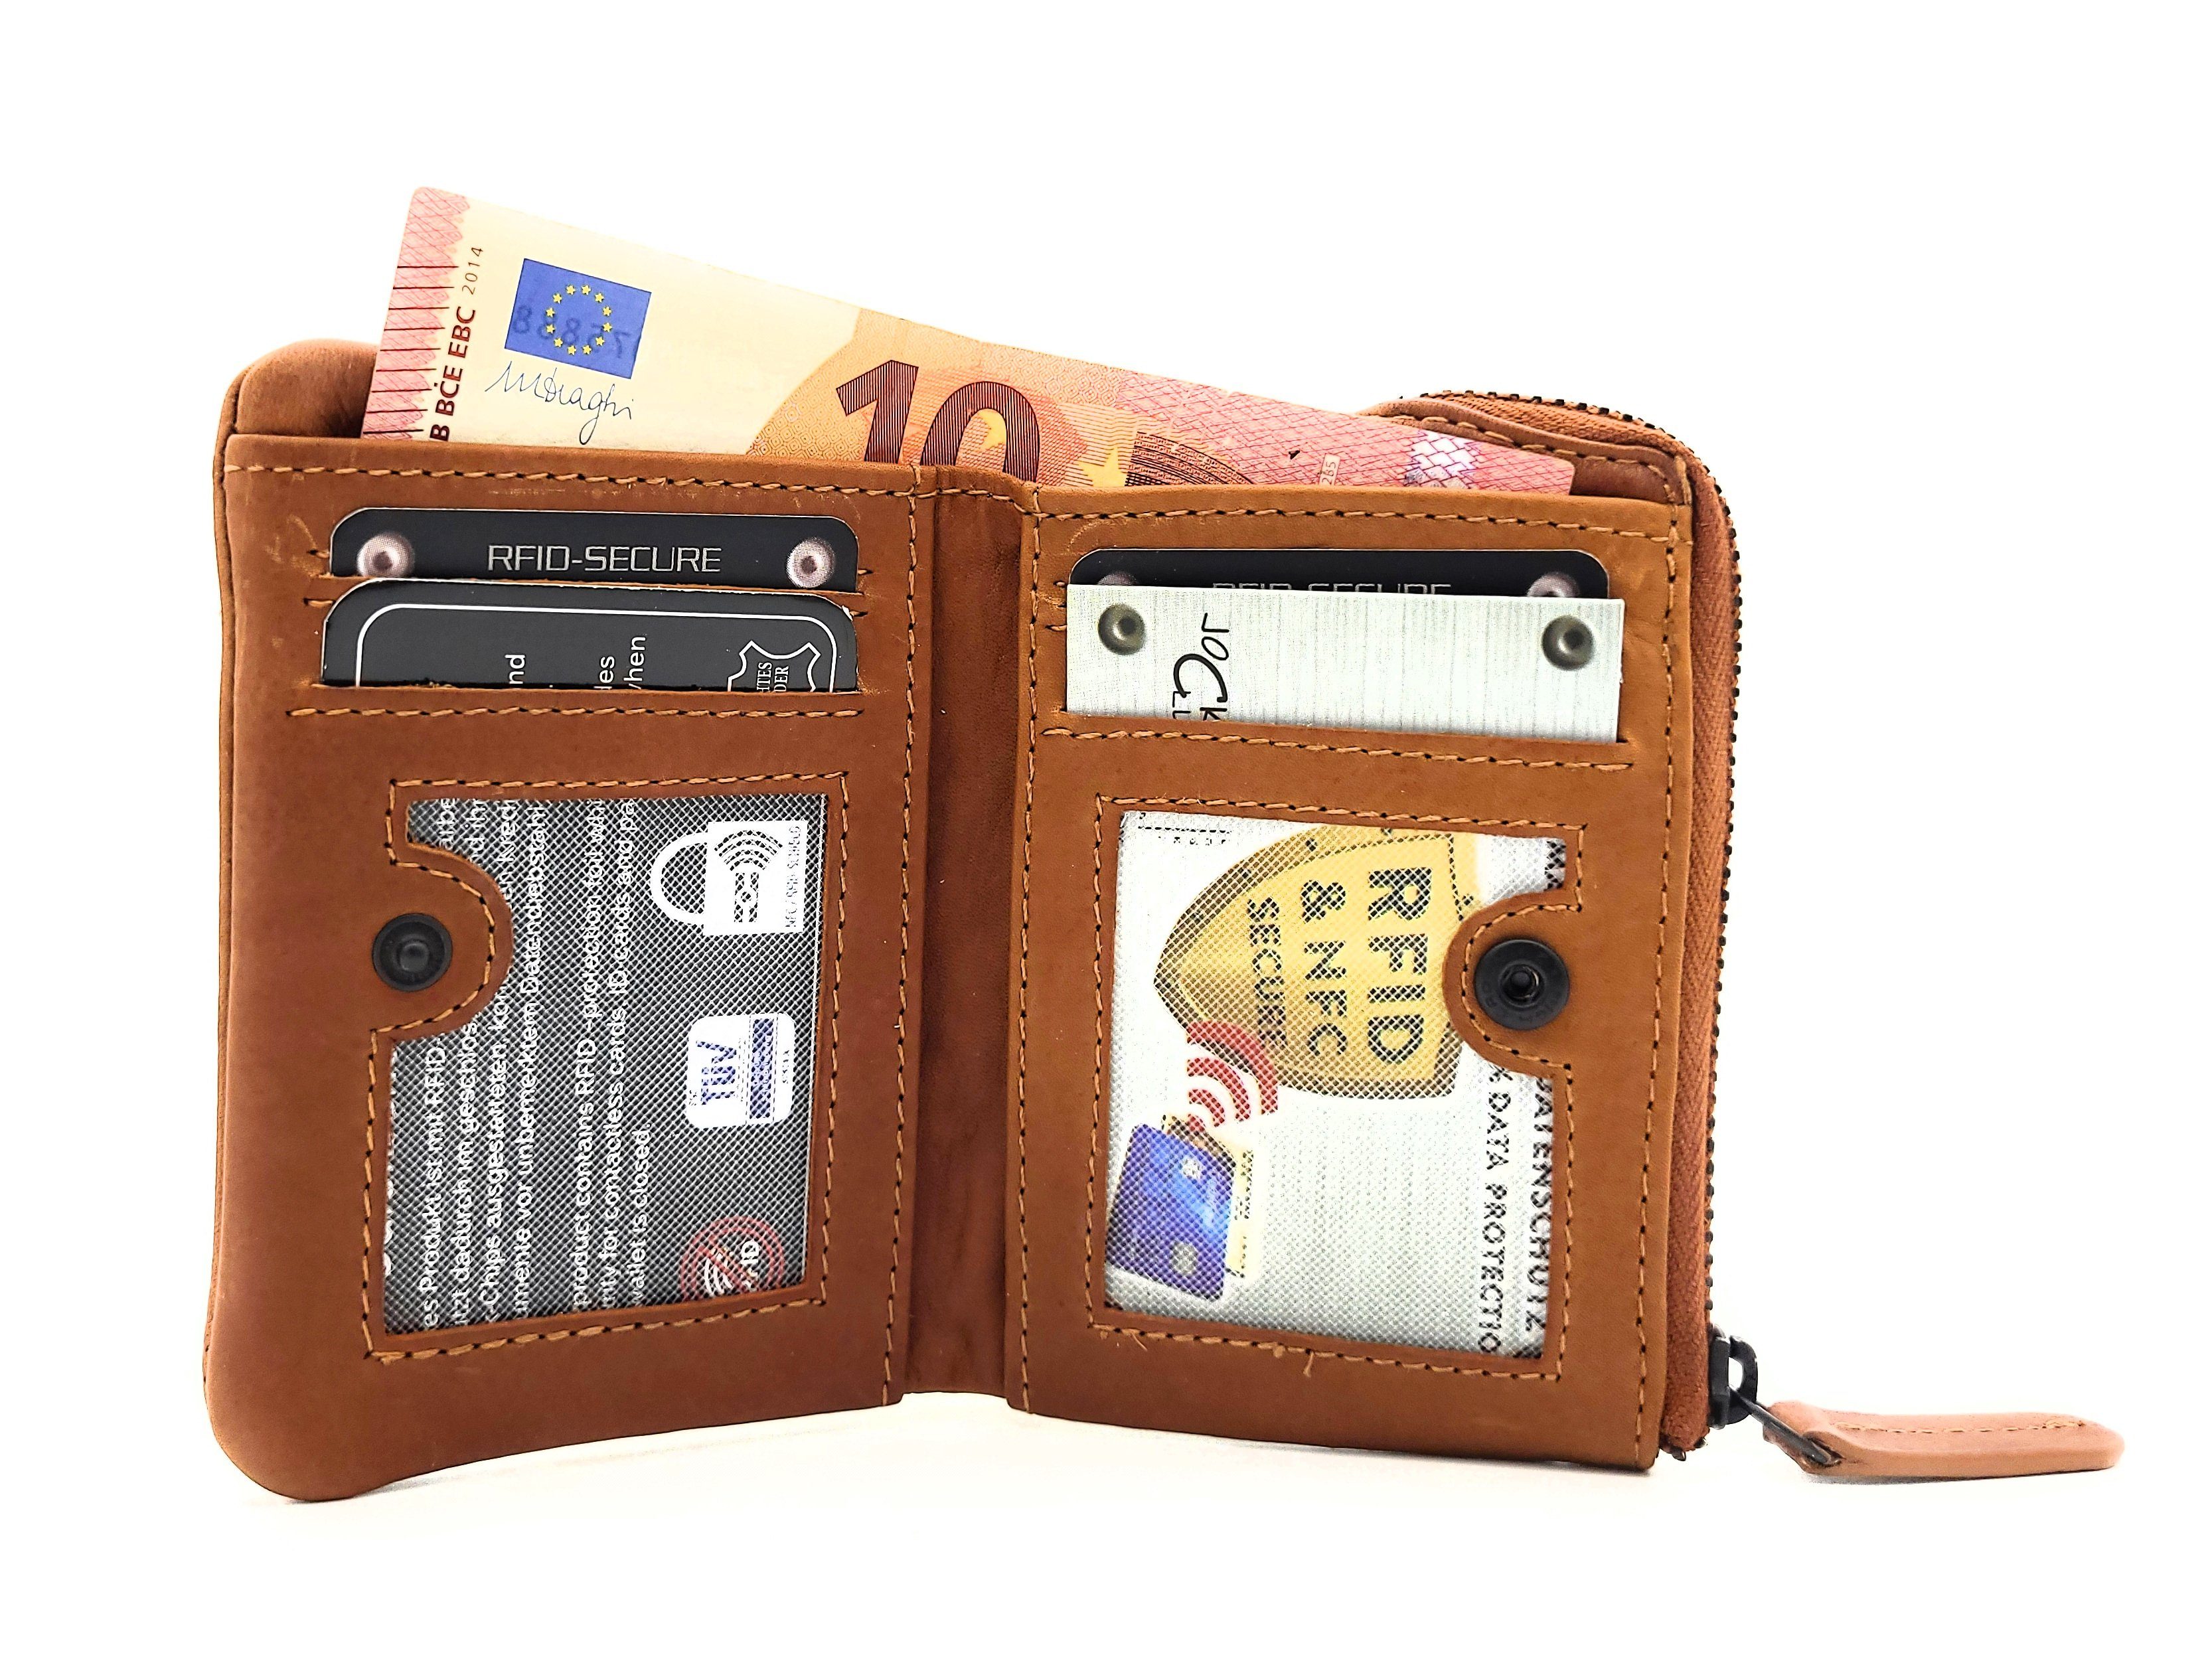 JOCKEY CLUB Mini Geldbörse echt Leder Portemonnaie mit RFID Schutz, gewachstes Rindleder, kompaktes Format, vintage, cognac braun | Mini-Geldbörsen